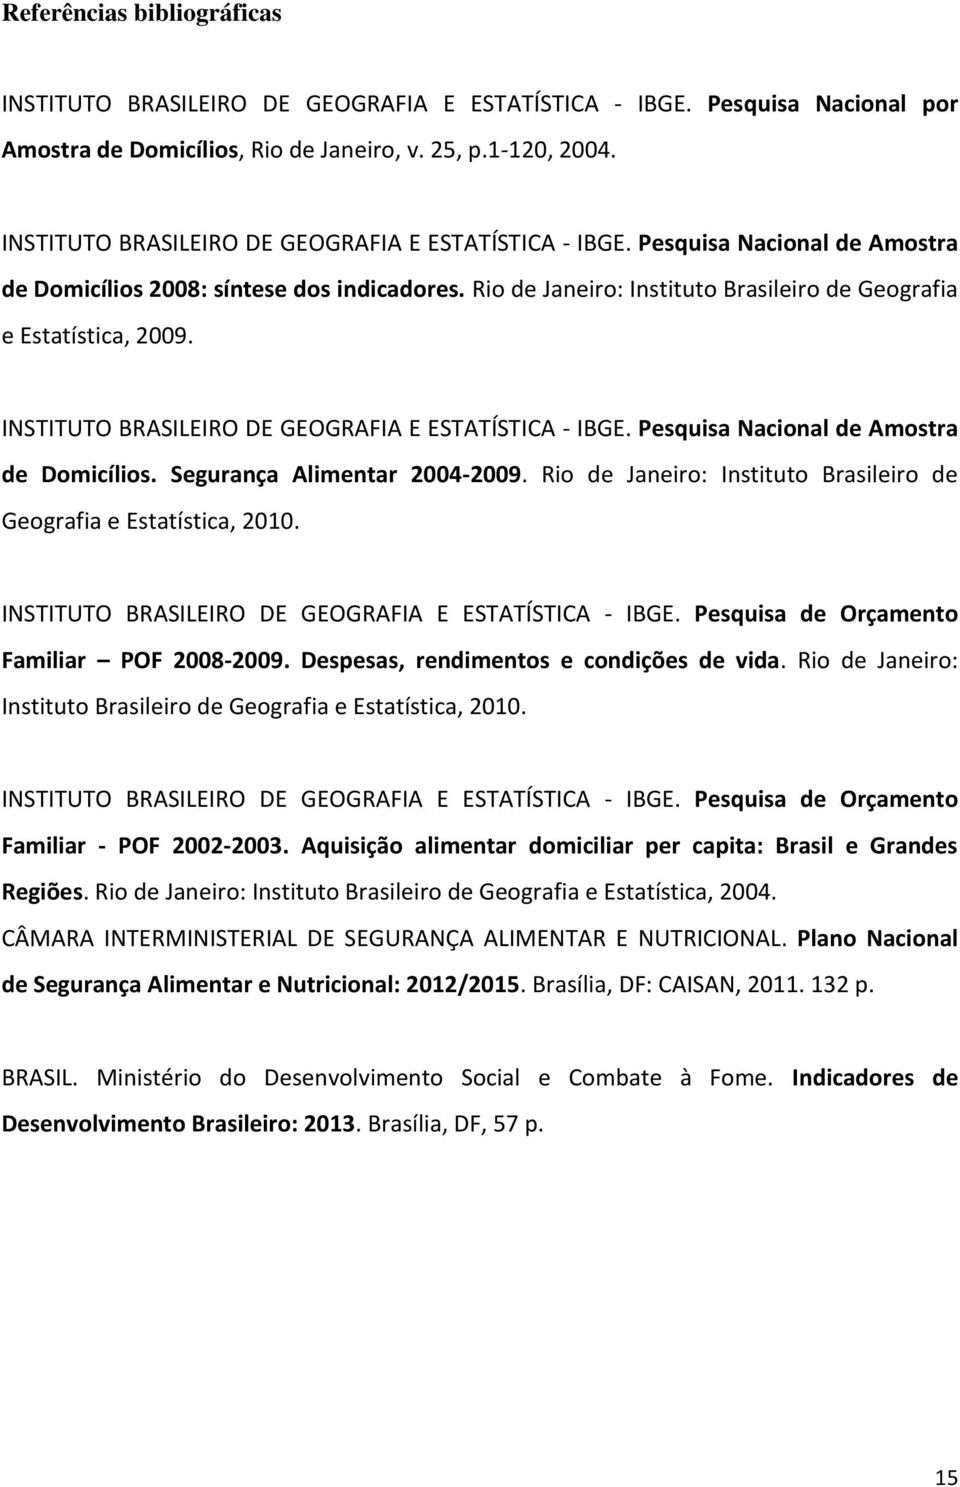 INSTITUTO BRASILEIRO DE GEOGRAFIA E ESTATÍSTICA - IBGE. Pesquisa Nacional de Amostra de Domicílios. Segurança Alimentar 2004-2009.